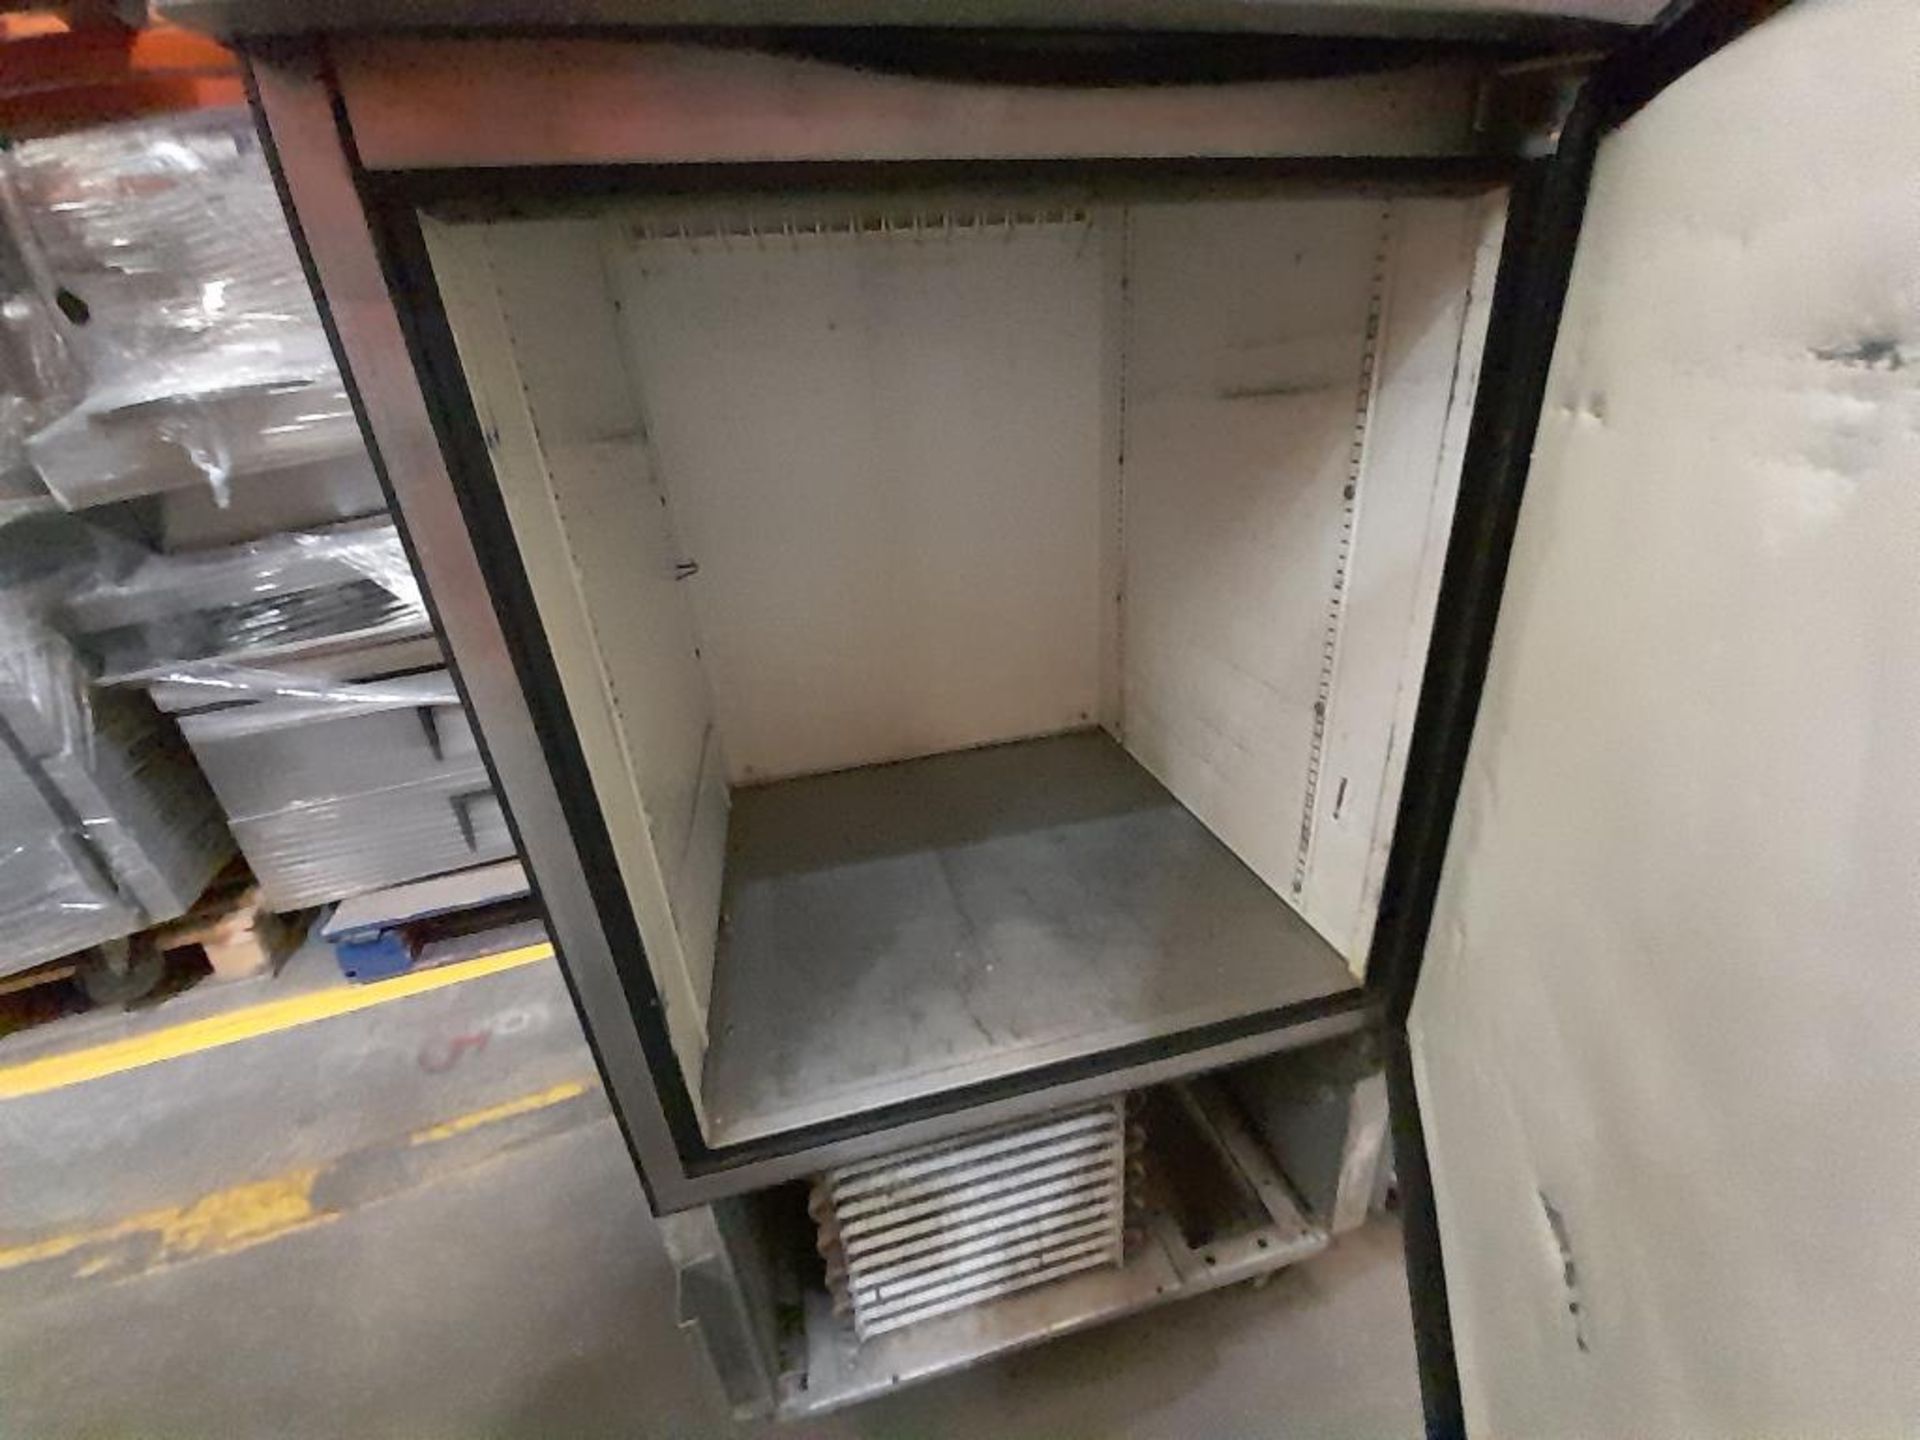 Lote de 2 refrigeradores: 1 Refrigerador en acero inoxidable de dos puertas, Marca TRUE FREEZER, Mo - Image 4 of 6